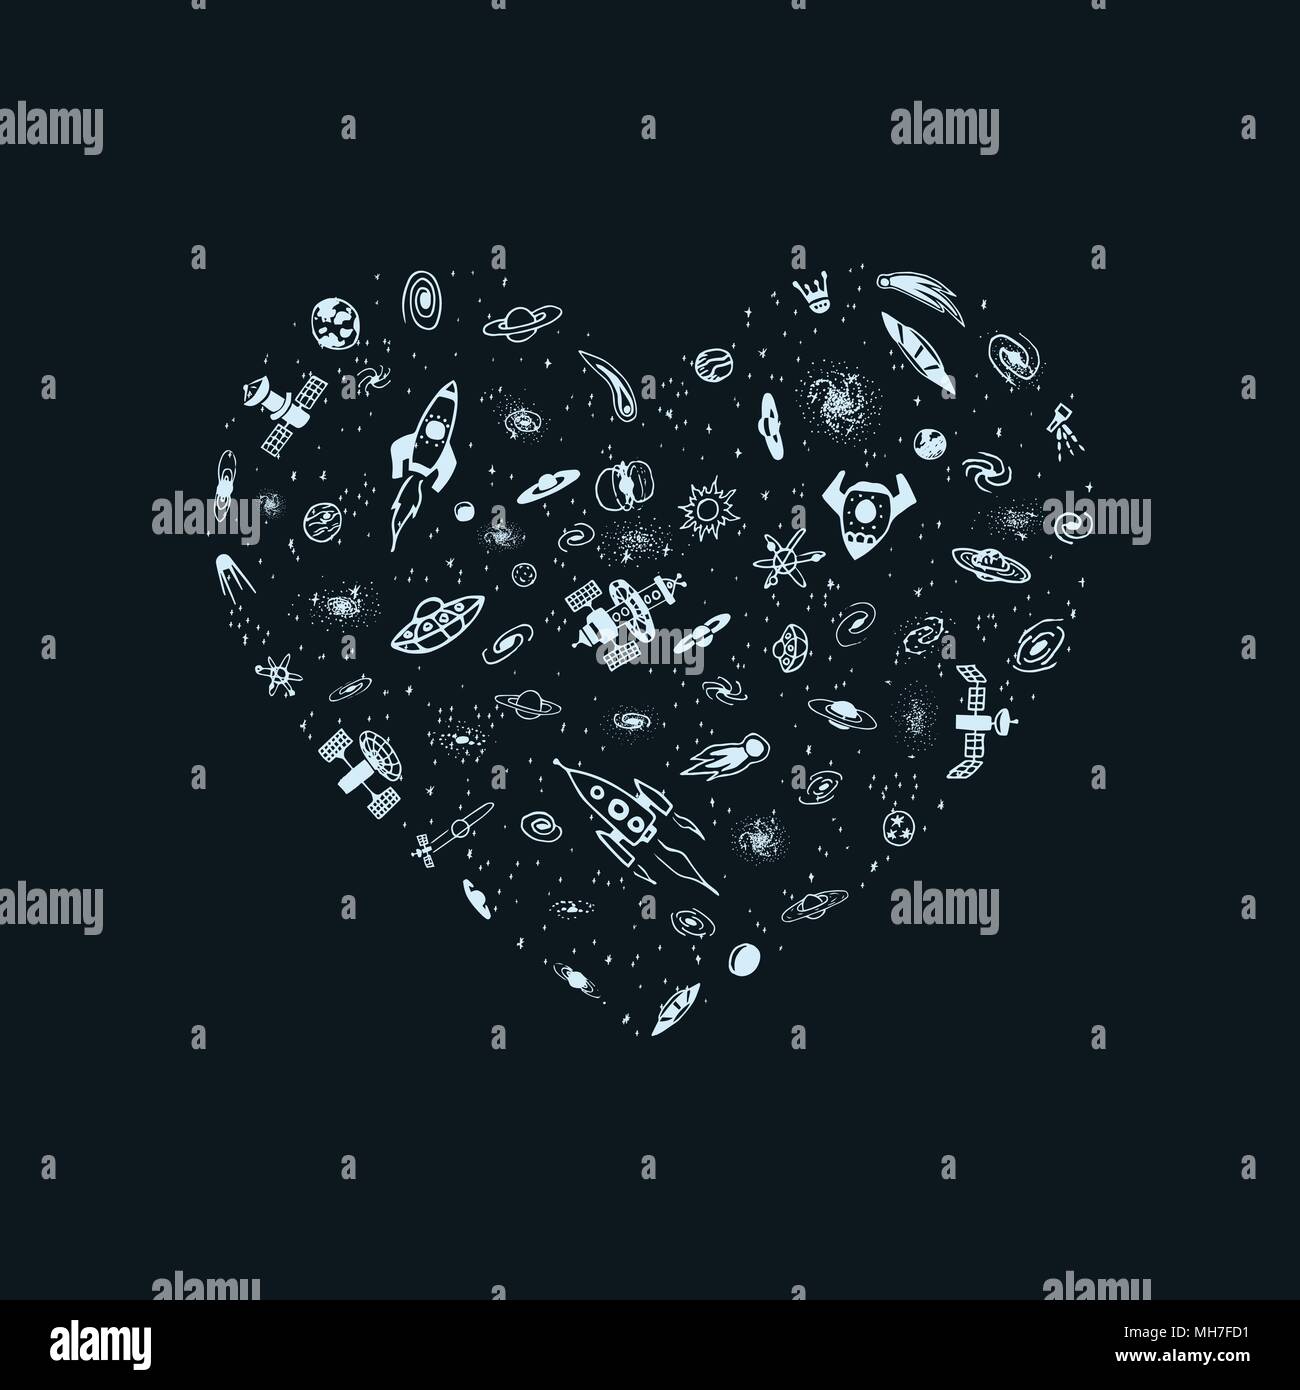 Vector illustration de l'objet spatial en forme de coeur. Coeur magique à partir de la fusée, galaxie, étoile, planète, ovni. Carte de souhaits pour la Saint-Valentin Illustration de Vecteur